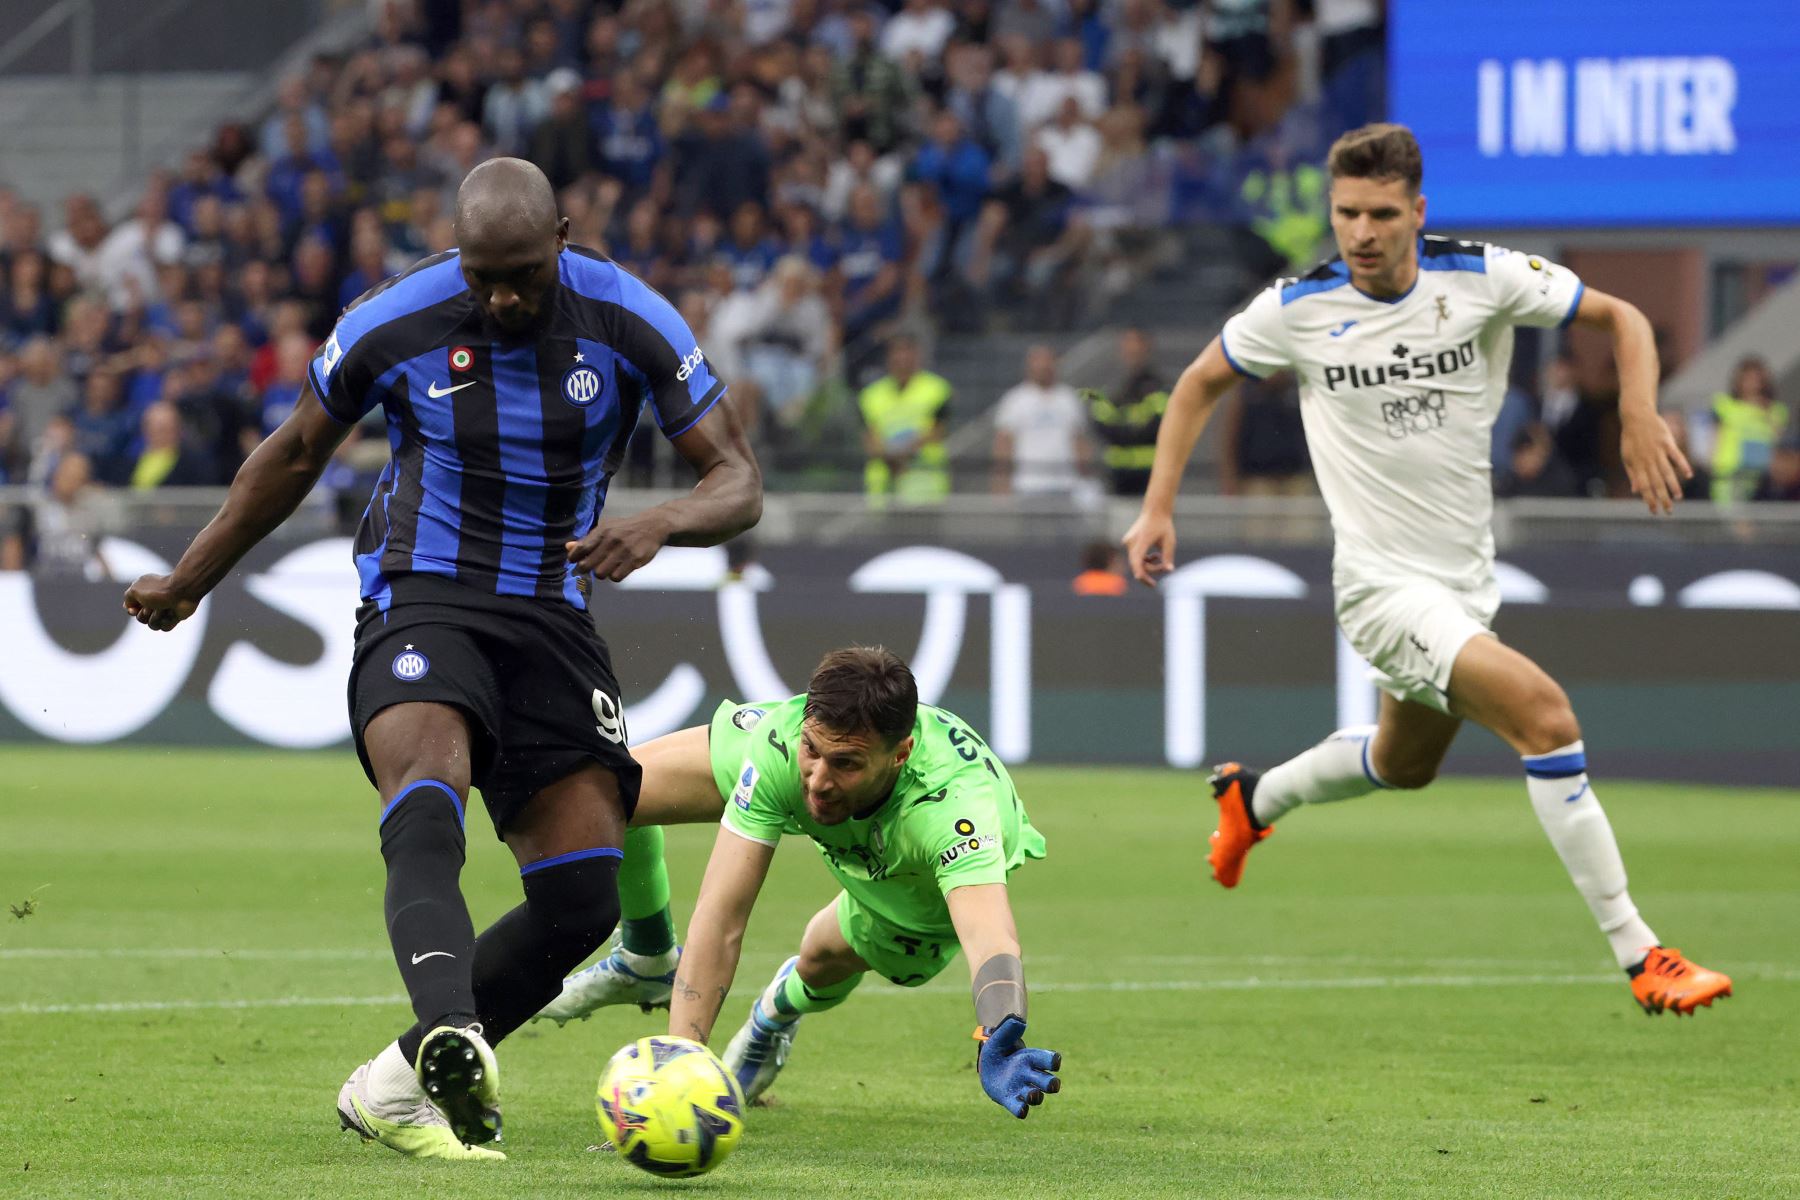 Romelu Lukaku del Inter de Milán anota el gol de 1-0 contra el portero de Atalanta,  Marco Sportiello durante el partido de fútbol de la serie A italiana entre el FC Inter y el Atalanta BC, en Milán, Italia.
Foto: EFE